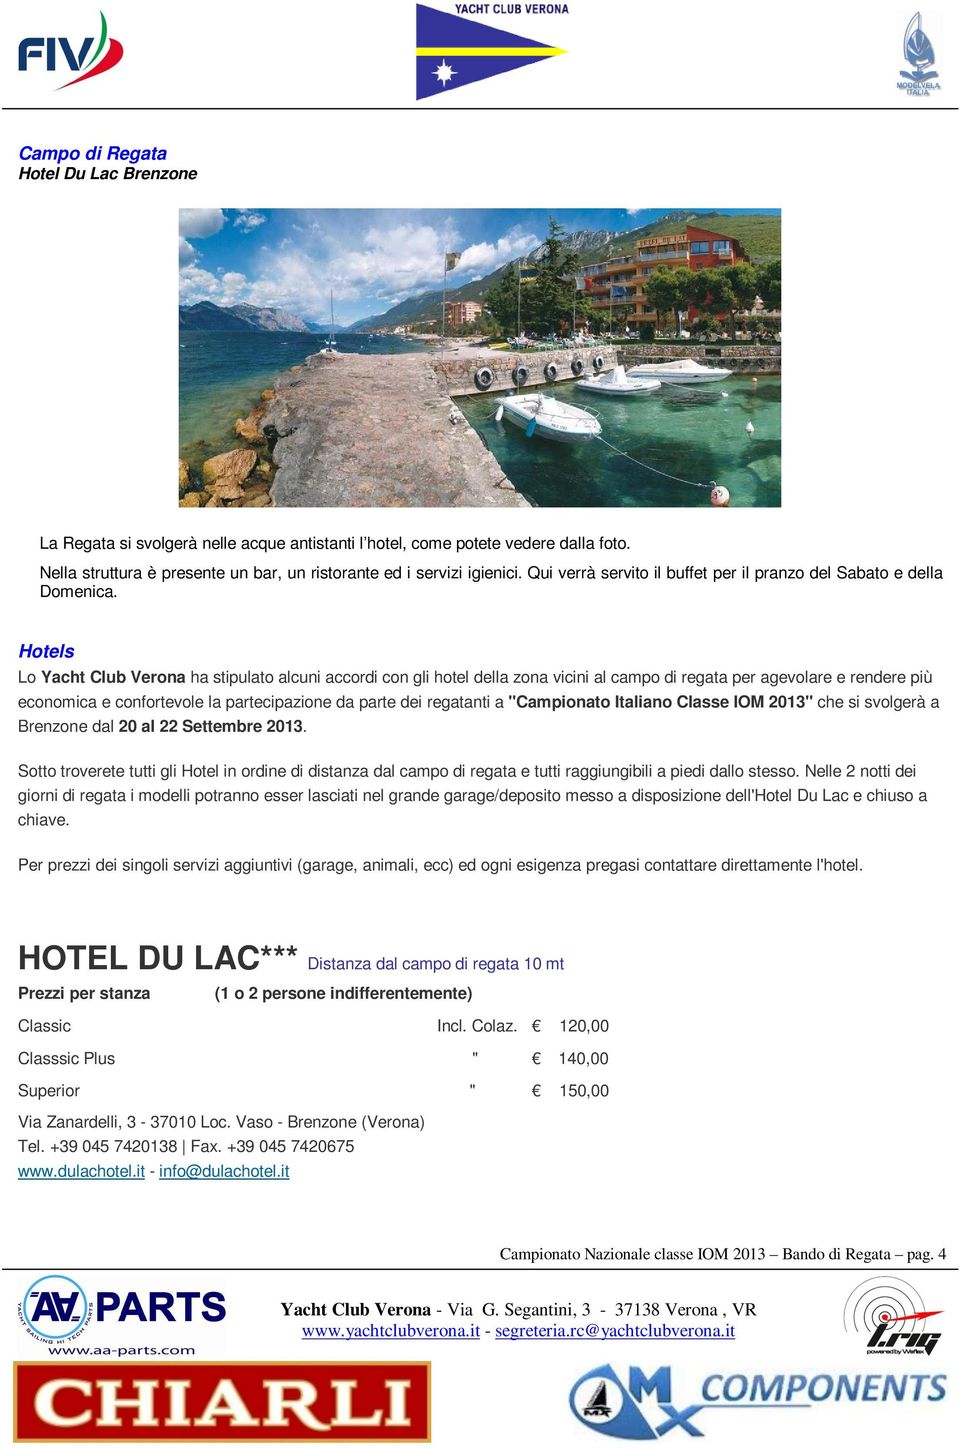 Hotels Lo Yacht Club Verona ha stipulato alcuni accordi con gli hotel della zona vicini al campo di regata per agevolare e rendere più economica e confortevole la partecipazione da parte dei